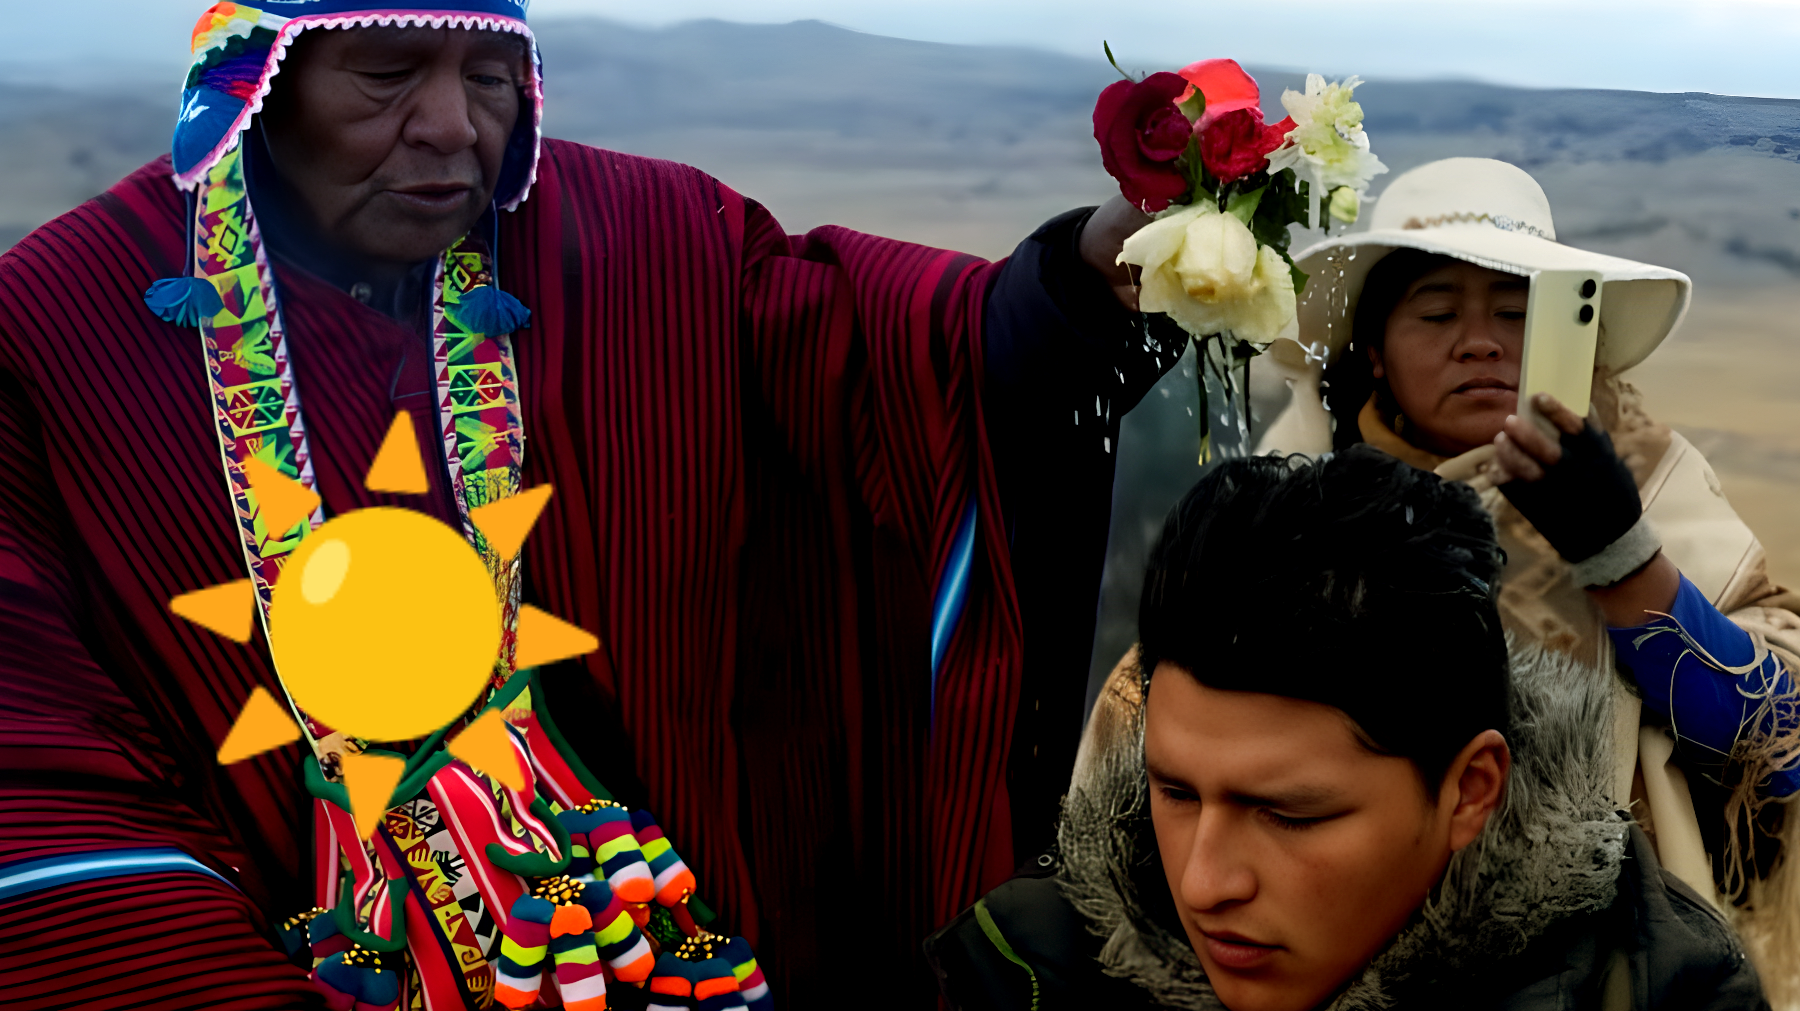 La misteriosa celebración del Año Andino que desconcierta: "El sol se oculta, pero ellos siguen adelante"